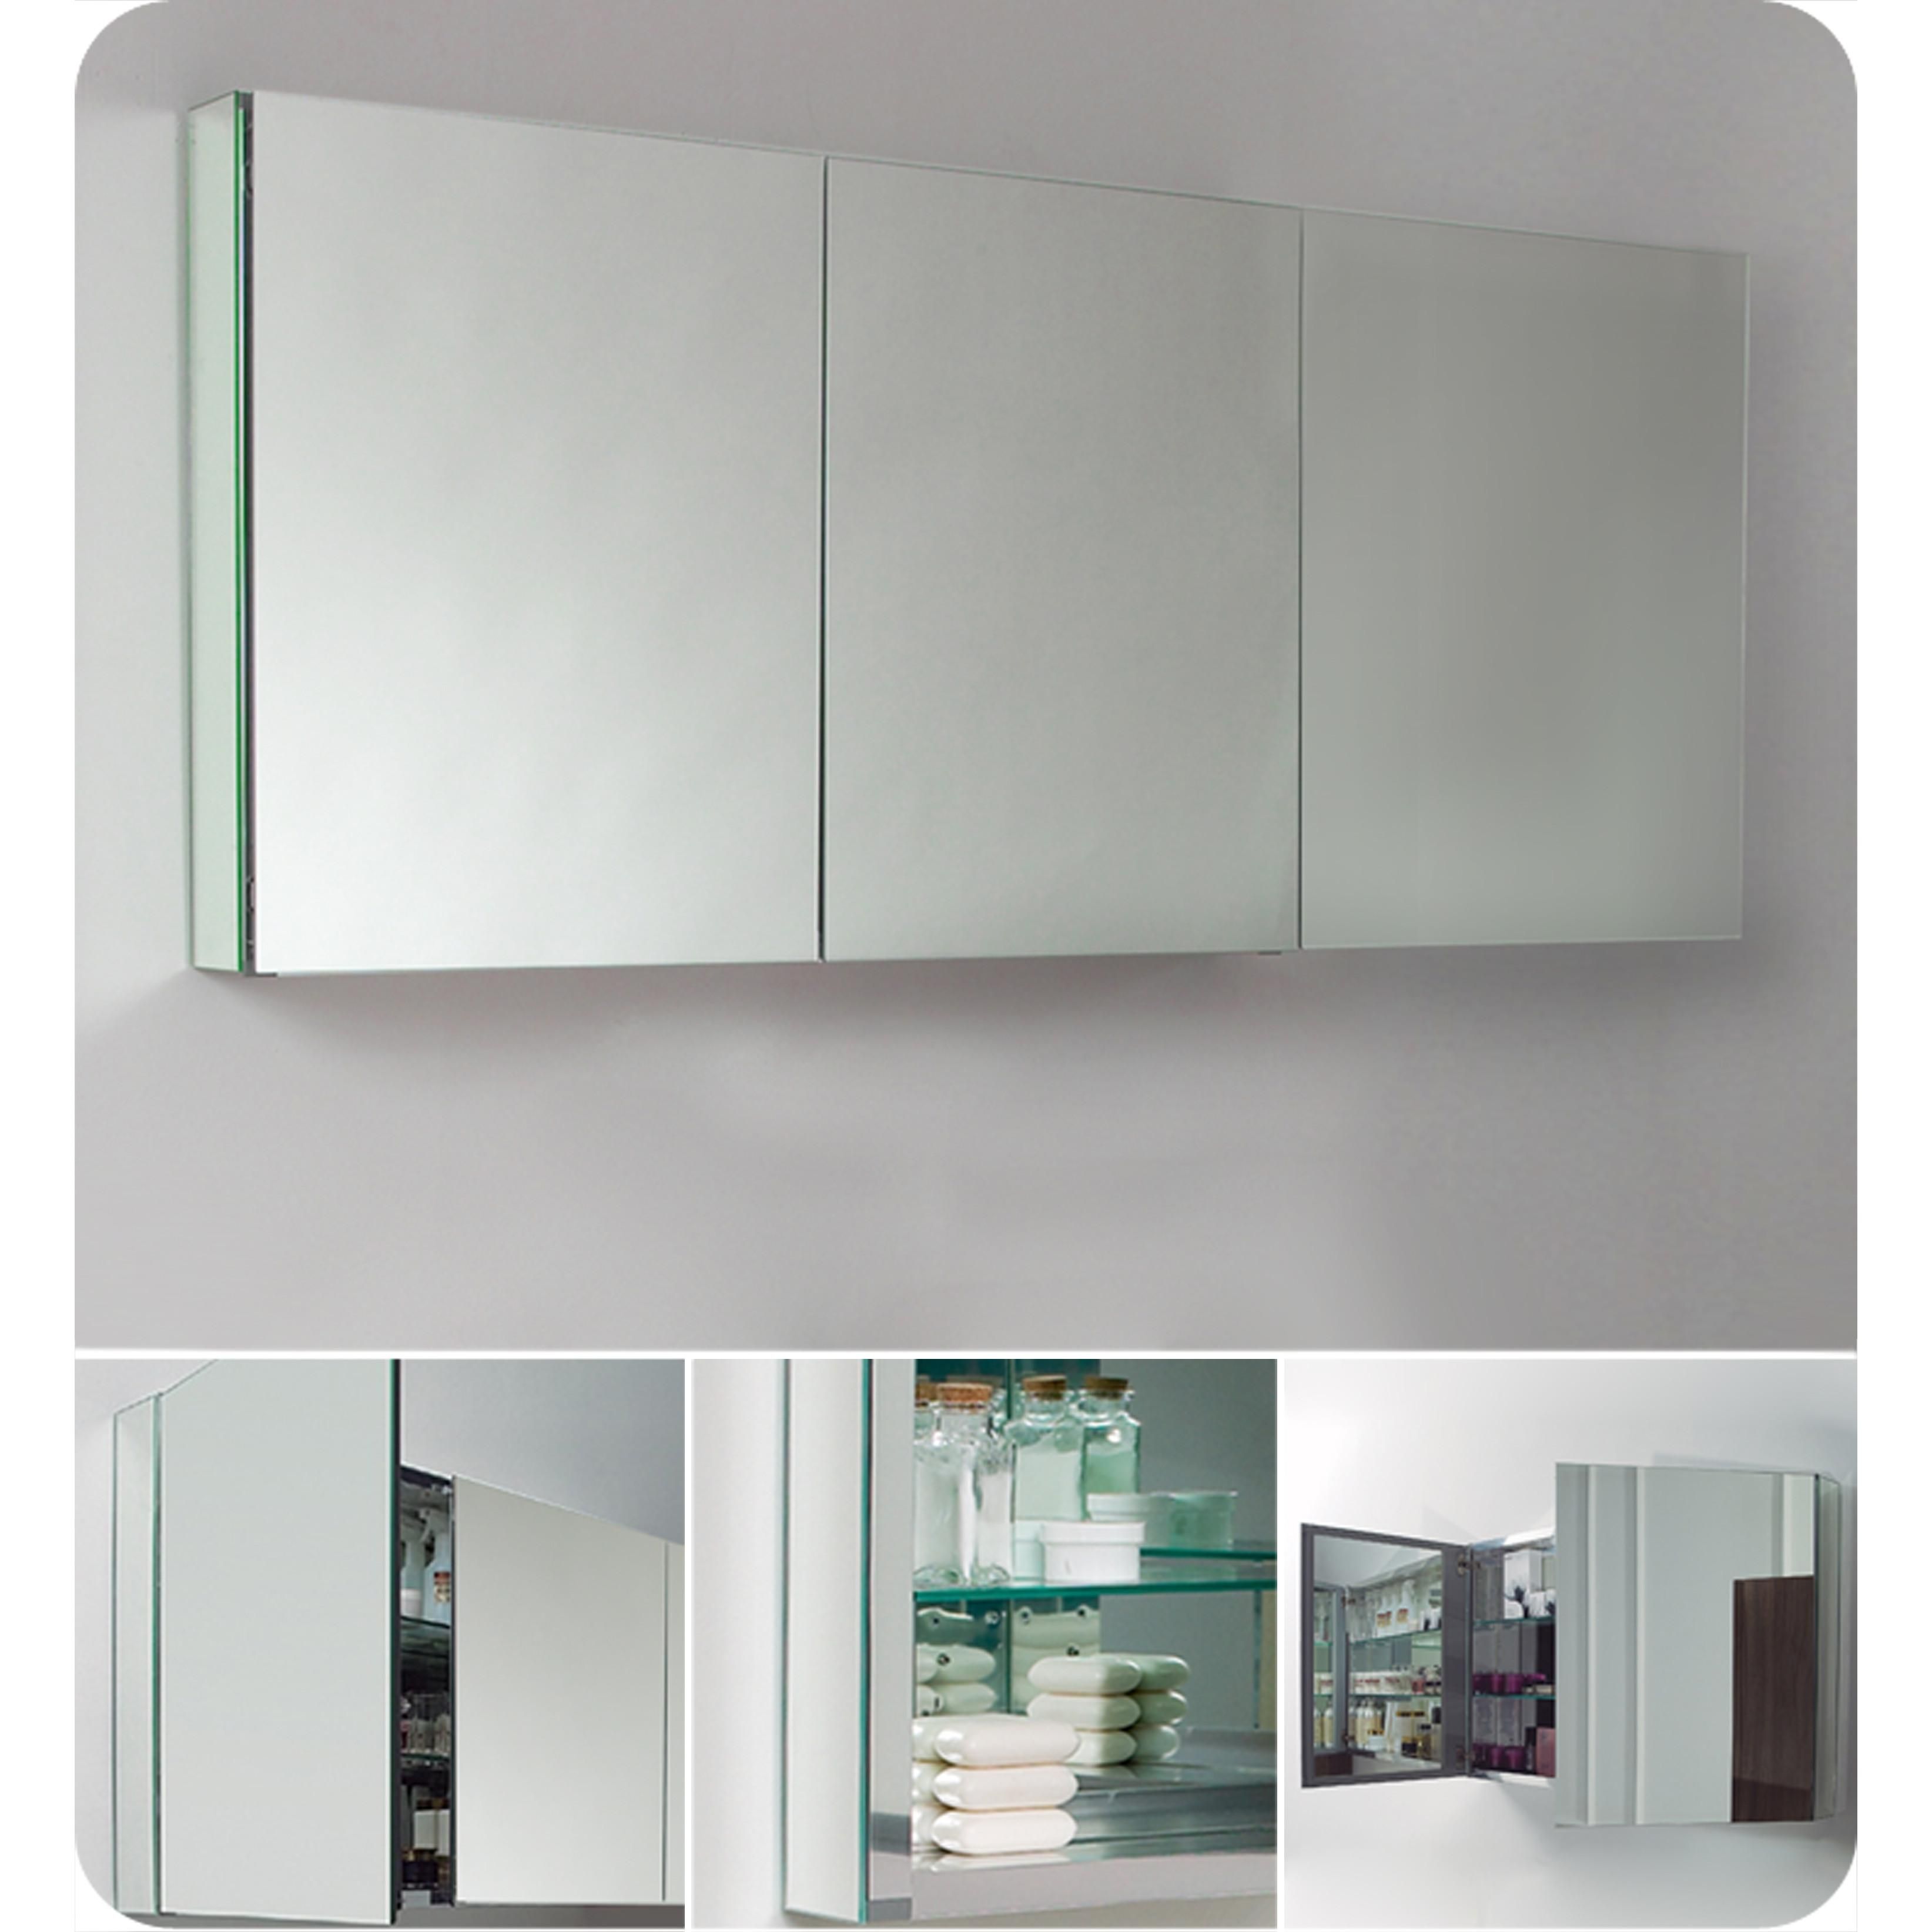 3 Door Medicine Cabinets With Mirrors 17 With 3 Door Medicine Inside 3 Door Medicine Cabinets With Mirrors (Photo 2 of 20)